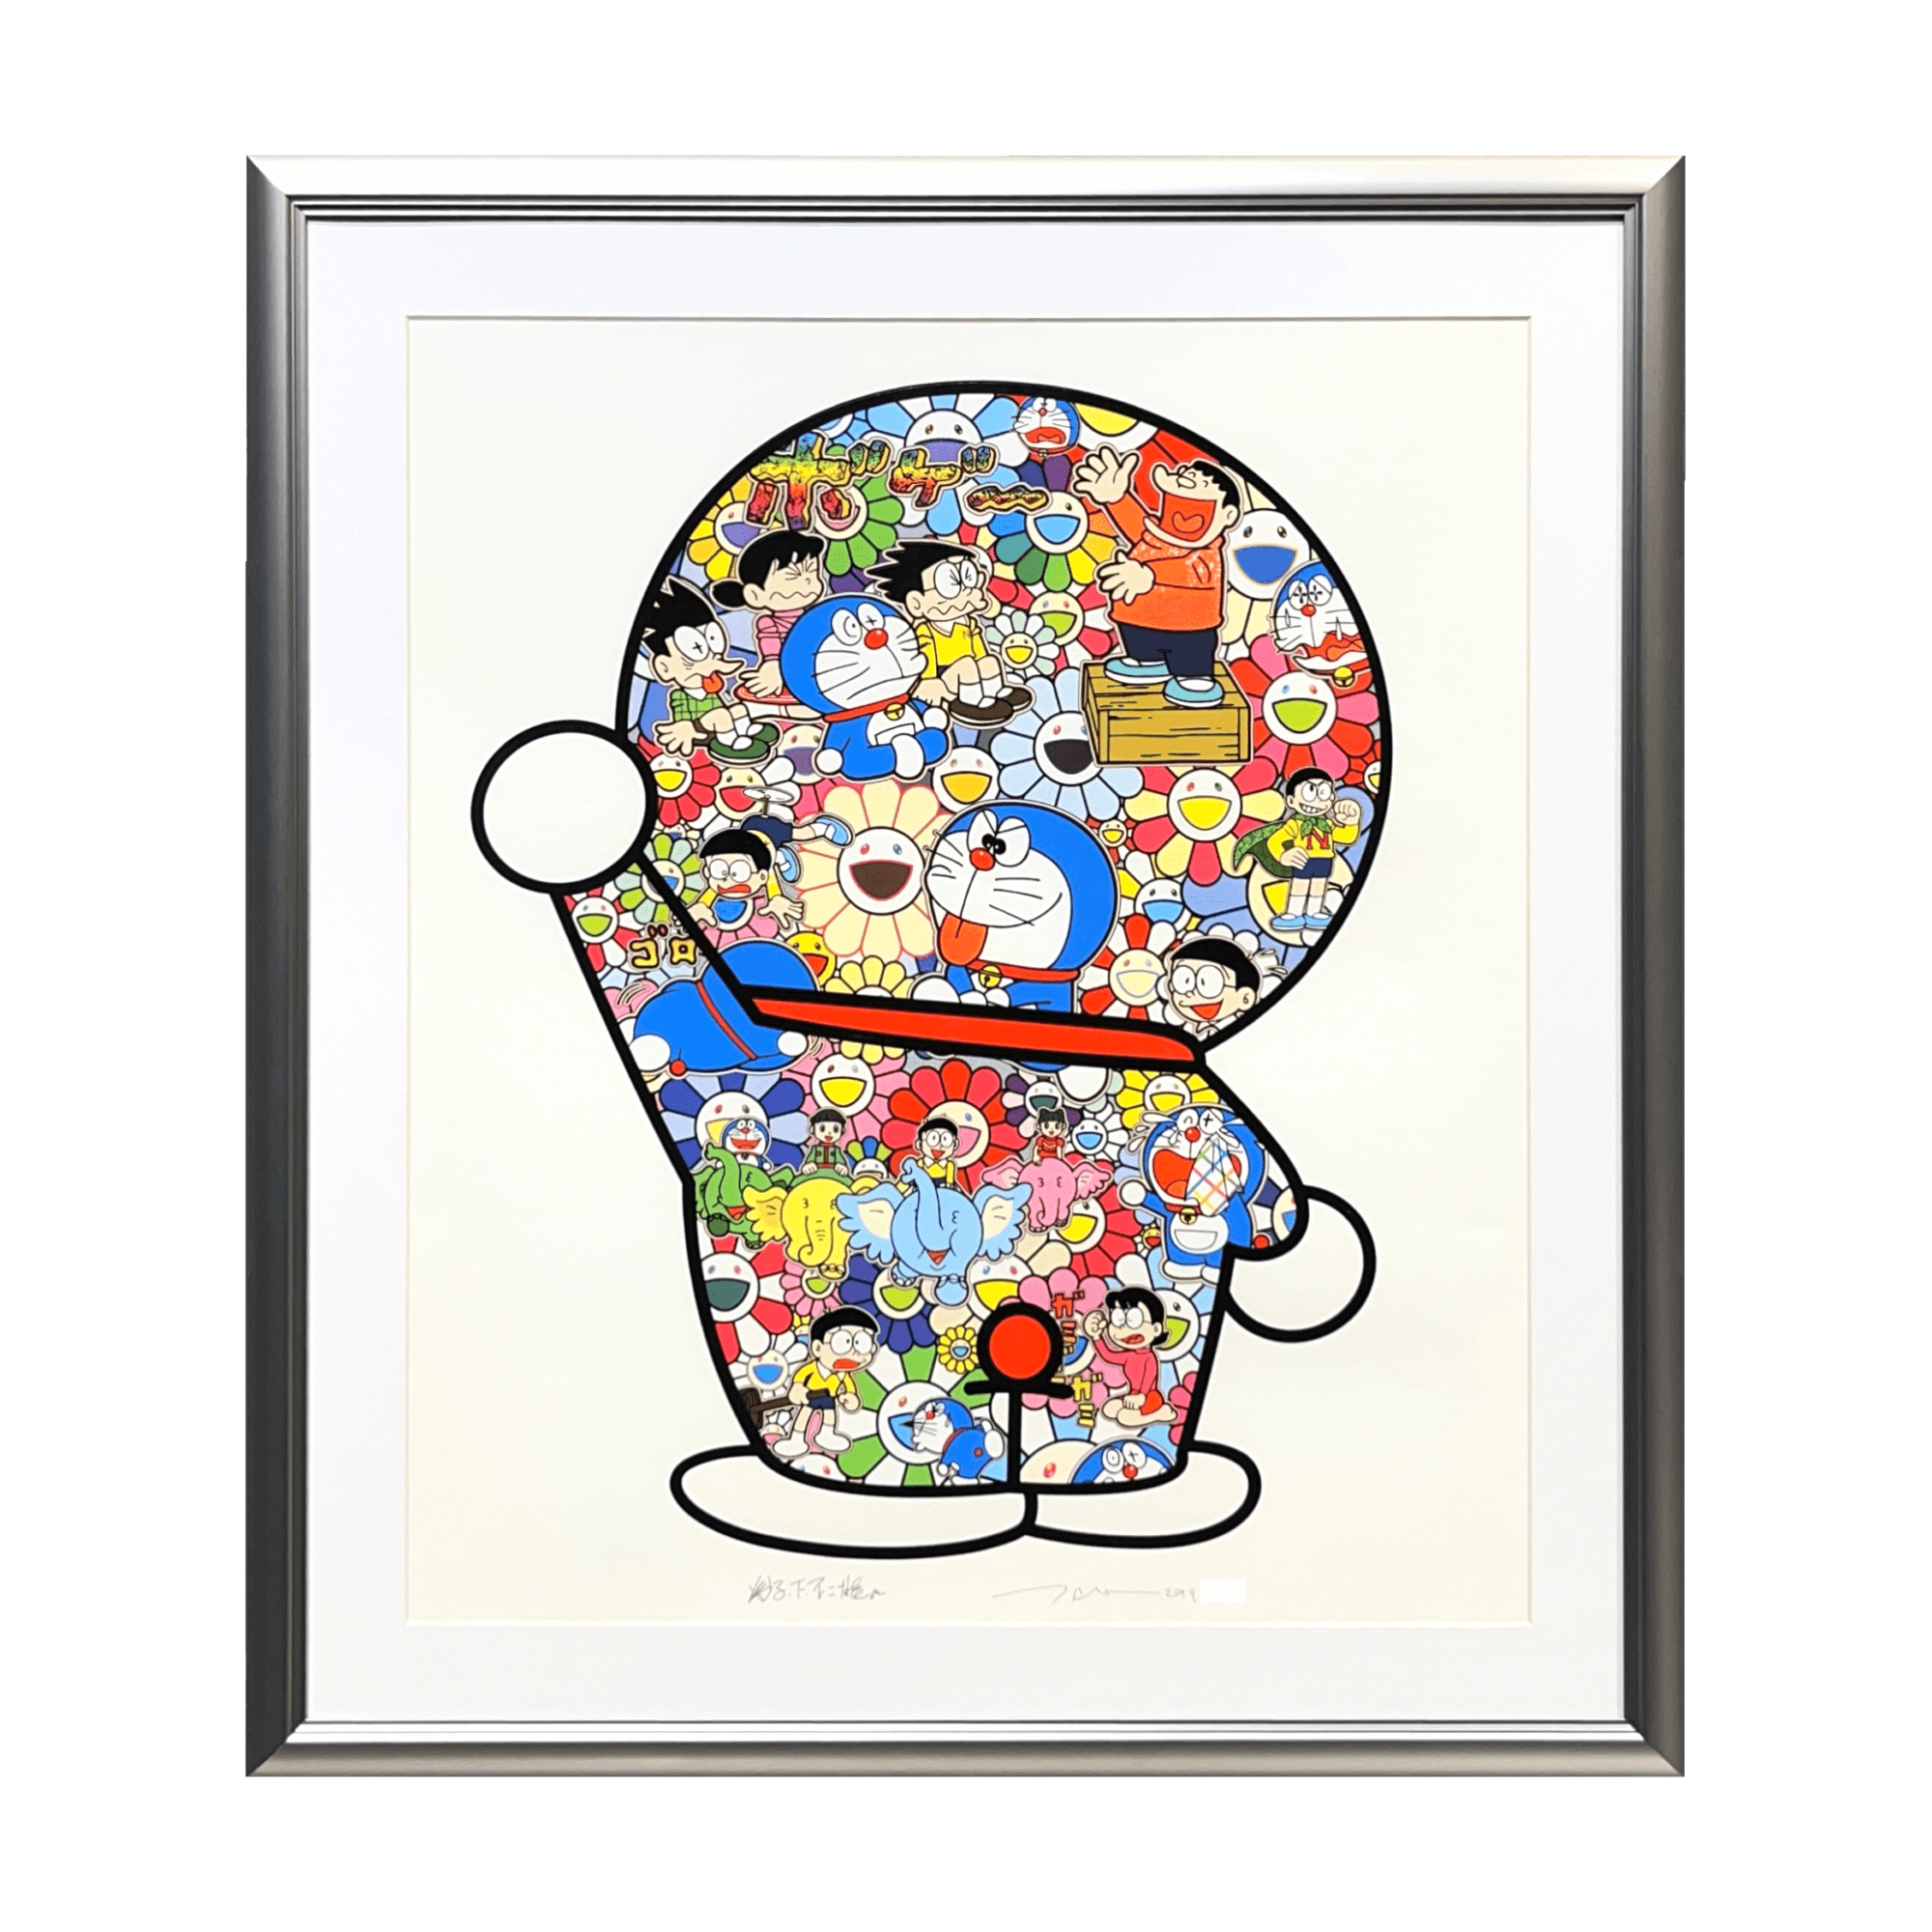 村上隆(Takashi Murakami)「ドラえもんの日常」ART GALLERY M – ART GARALLEY M